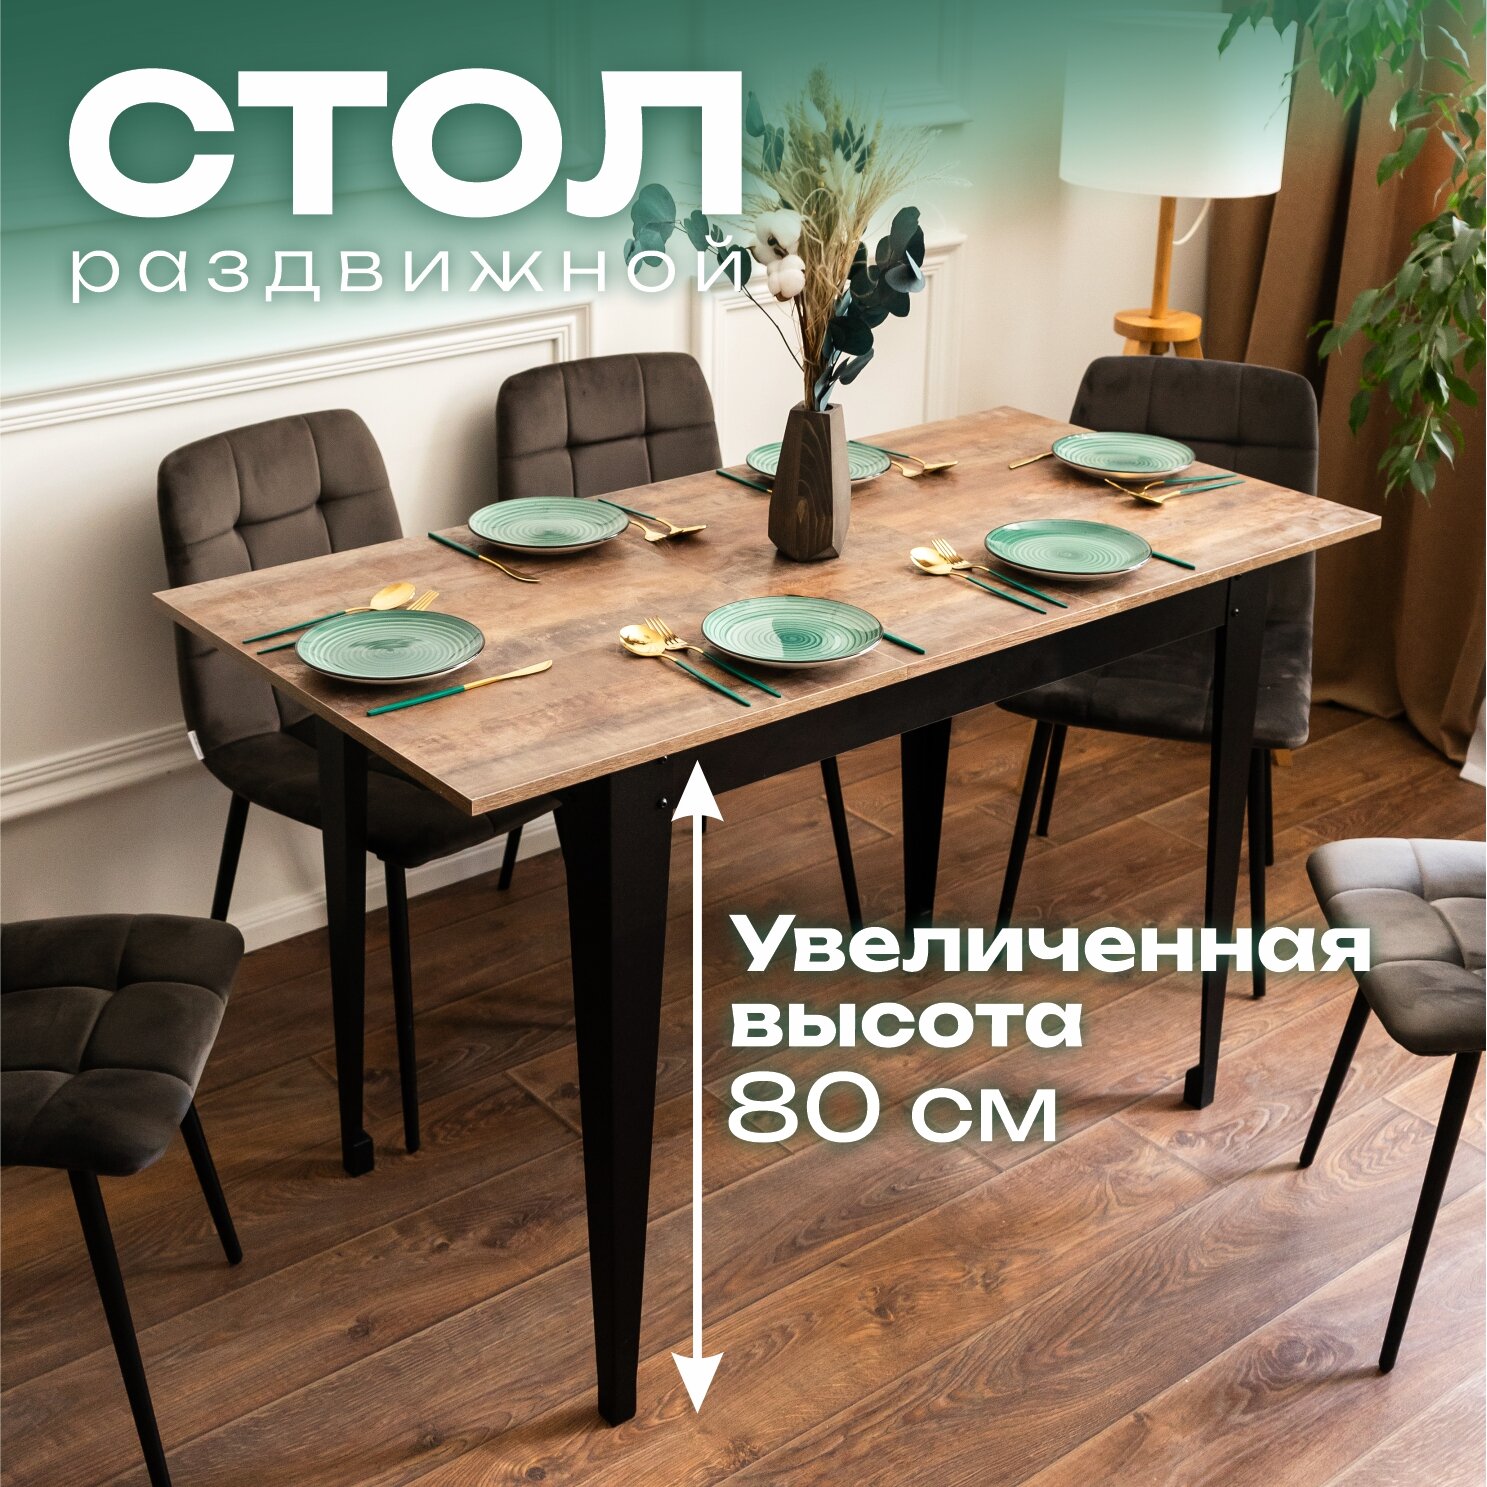 Стол кухонный раздвижной "Donini" Трансильвания стол обеденный раскладной.